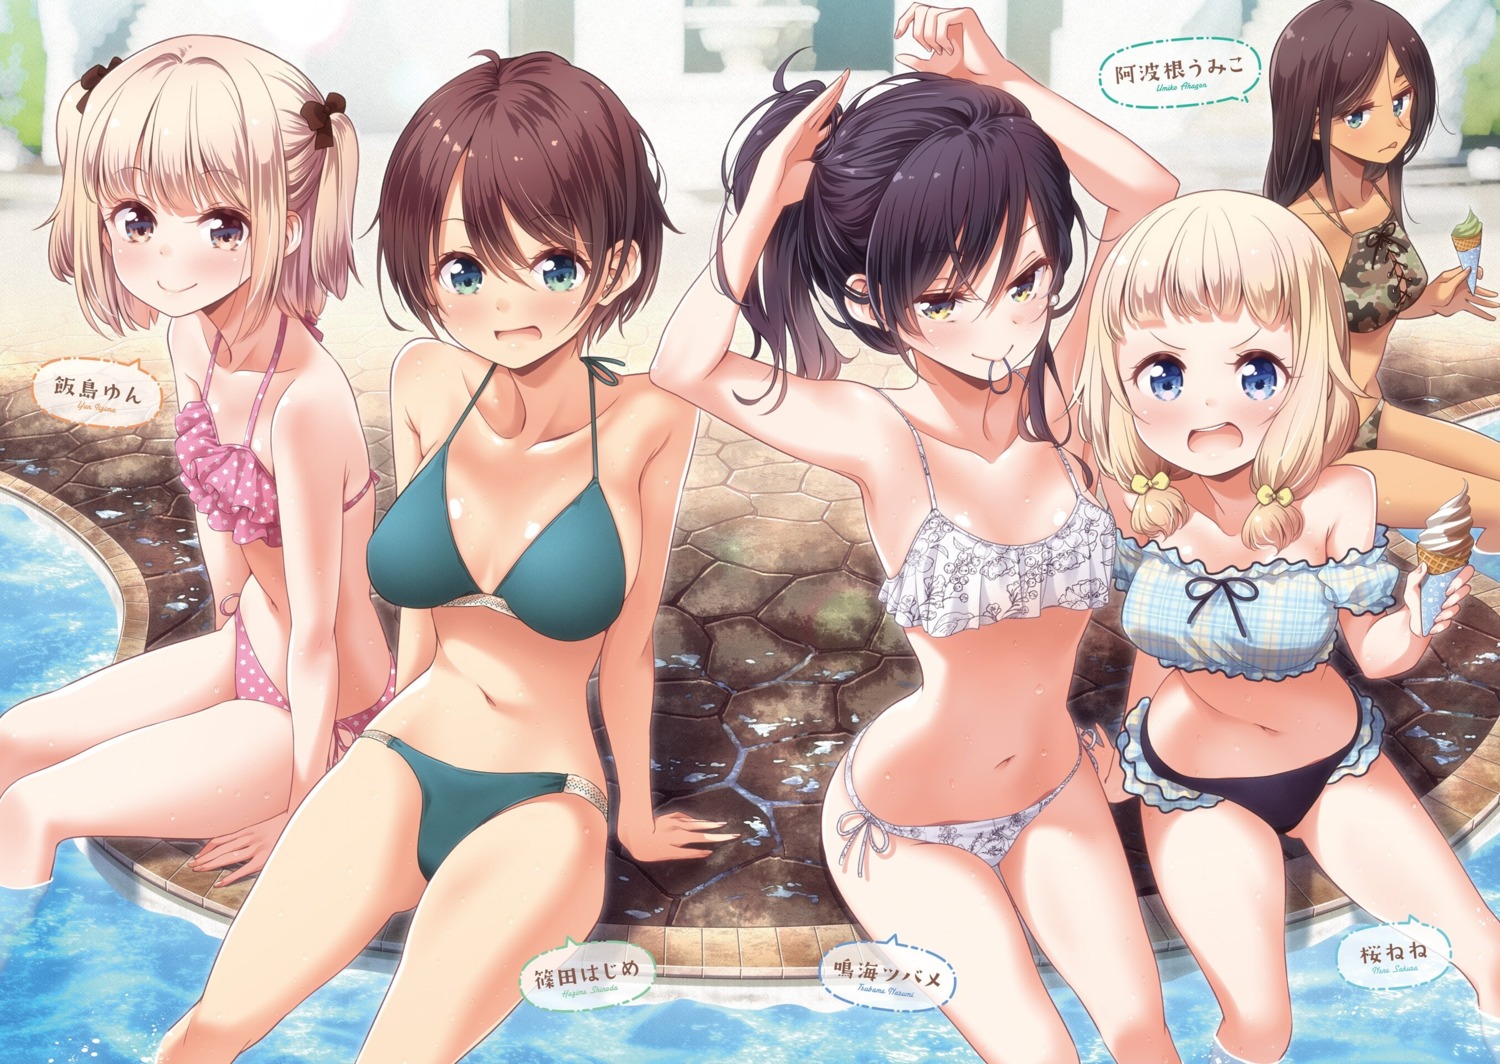 Tokunou Shoutarou New Game Ahagon Umiko Iijima Yun Narumi Tsubame Sakura Nene Shinoda Hajime Bikini Swimsuits Yande Re